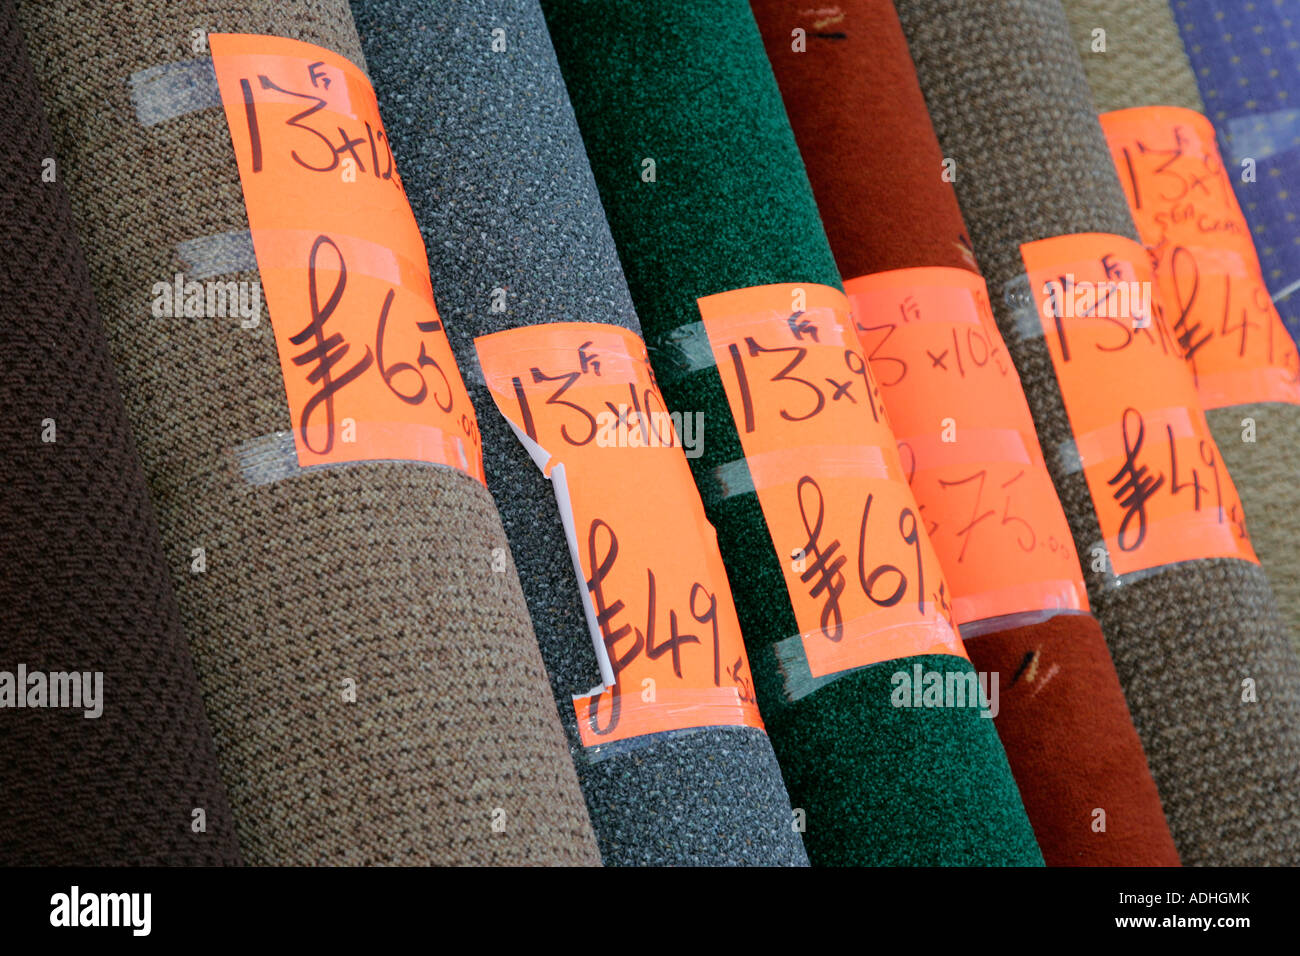 Rollos de alfombra hogar amontonadas en la pantalla fuera de una tienda de alfombras con etiquetas de precios en libras y mediciones imperial Foto de stock